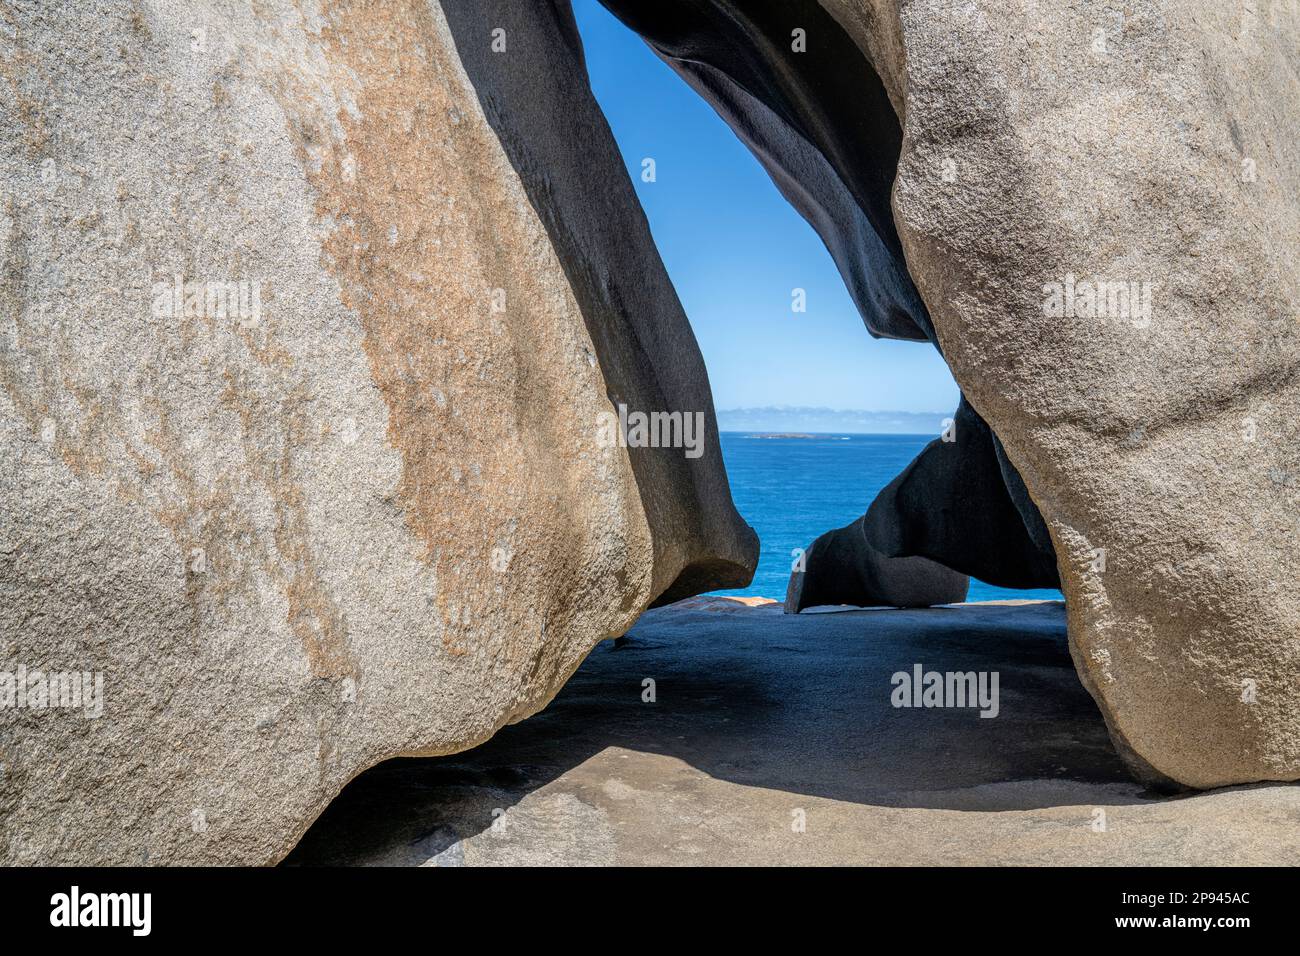 Remarkable Rocks, parc national de Flinders Chase, Kangaroo Island, Australie du Sud, Australie Banque D'Images